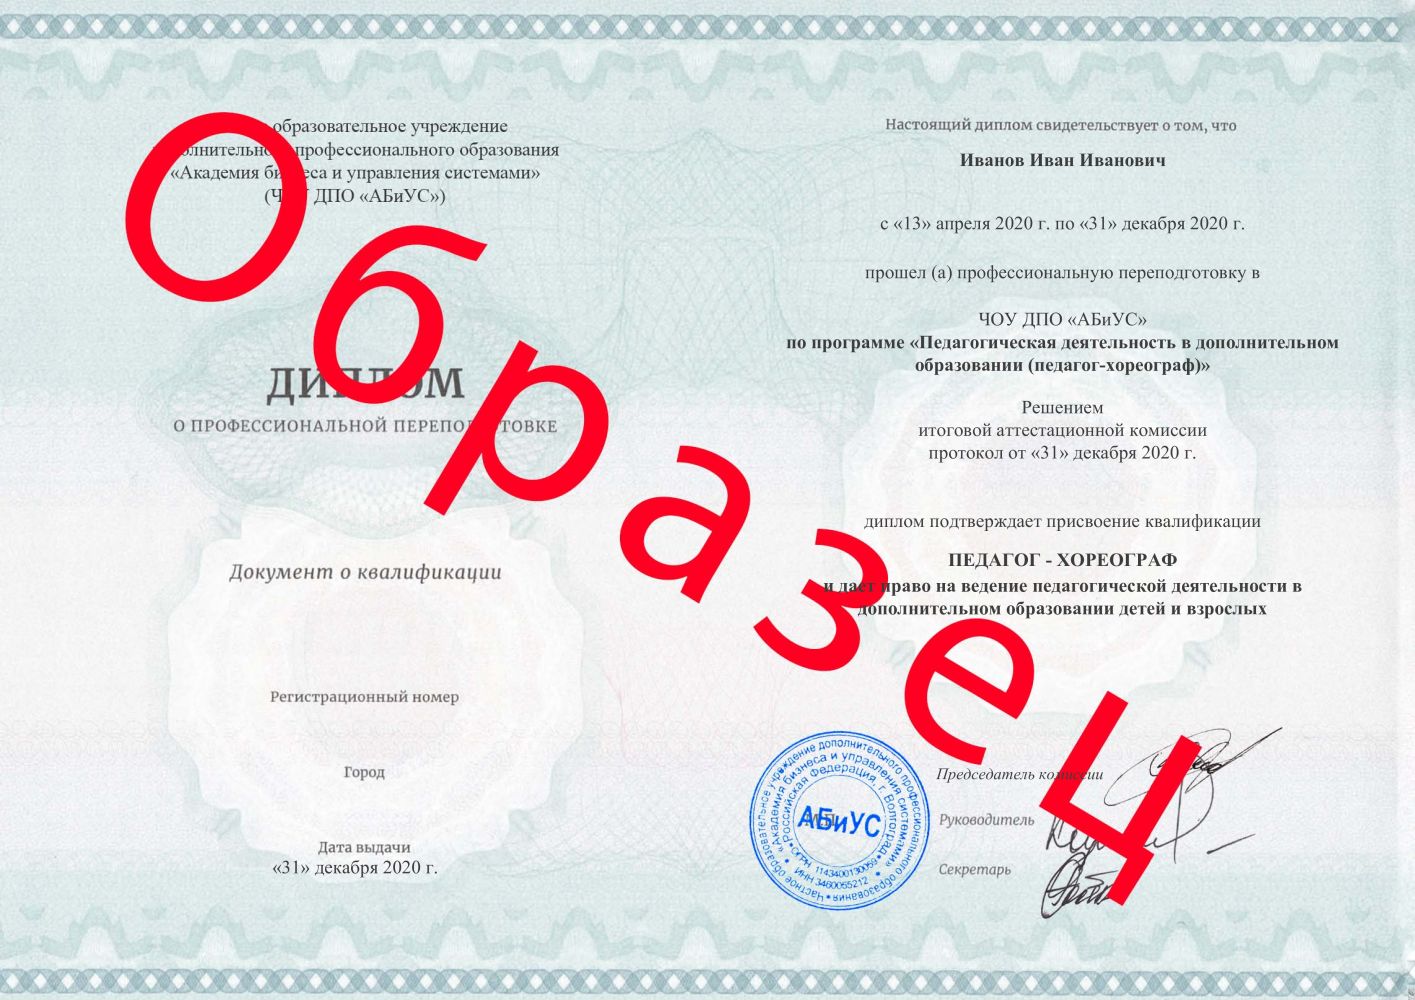 Диплом Педагогическая деятельность в дополнительном образовании (педагог-хореограф) 260 часов 7250 руб.